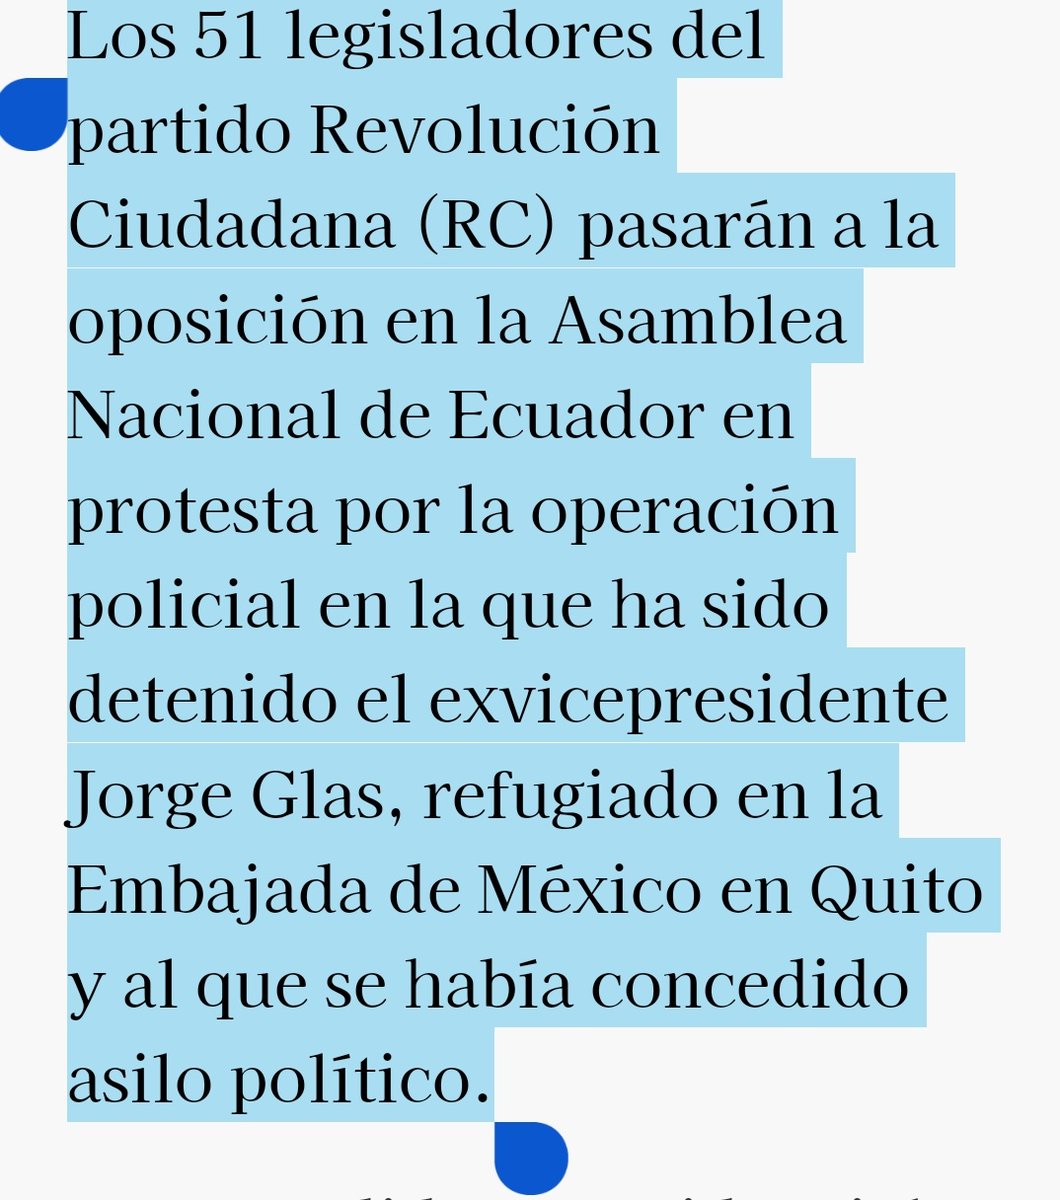 #DanielNoboa pierde la mayoría en el congreso. .se van 51 legisladores al partido de oposición.
#EcuadorEstadoDeBarbarie 
#EcuadorBajoElFascismo 
Adiós mayoría..👋
Noboa !